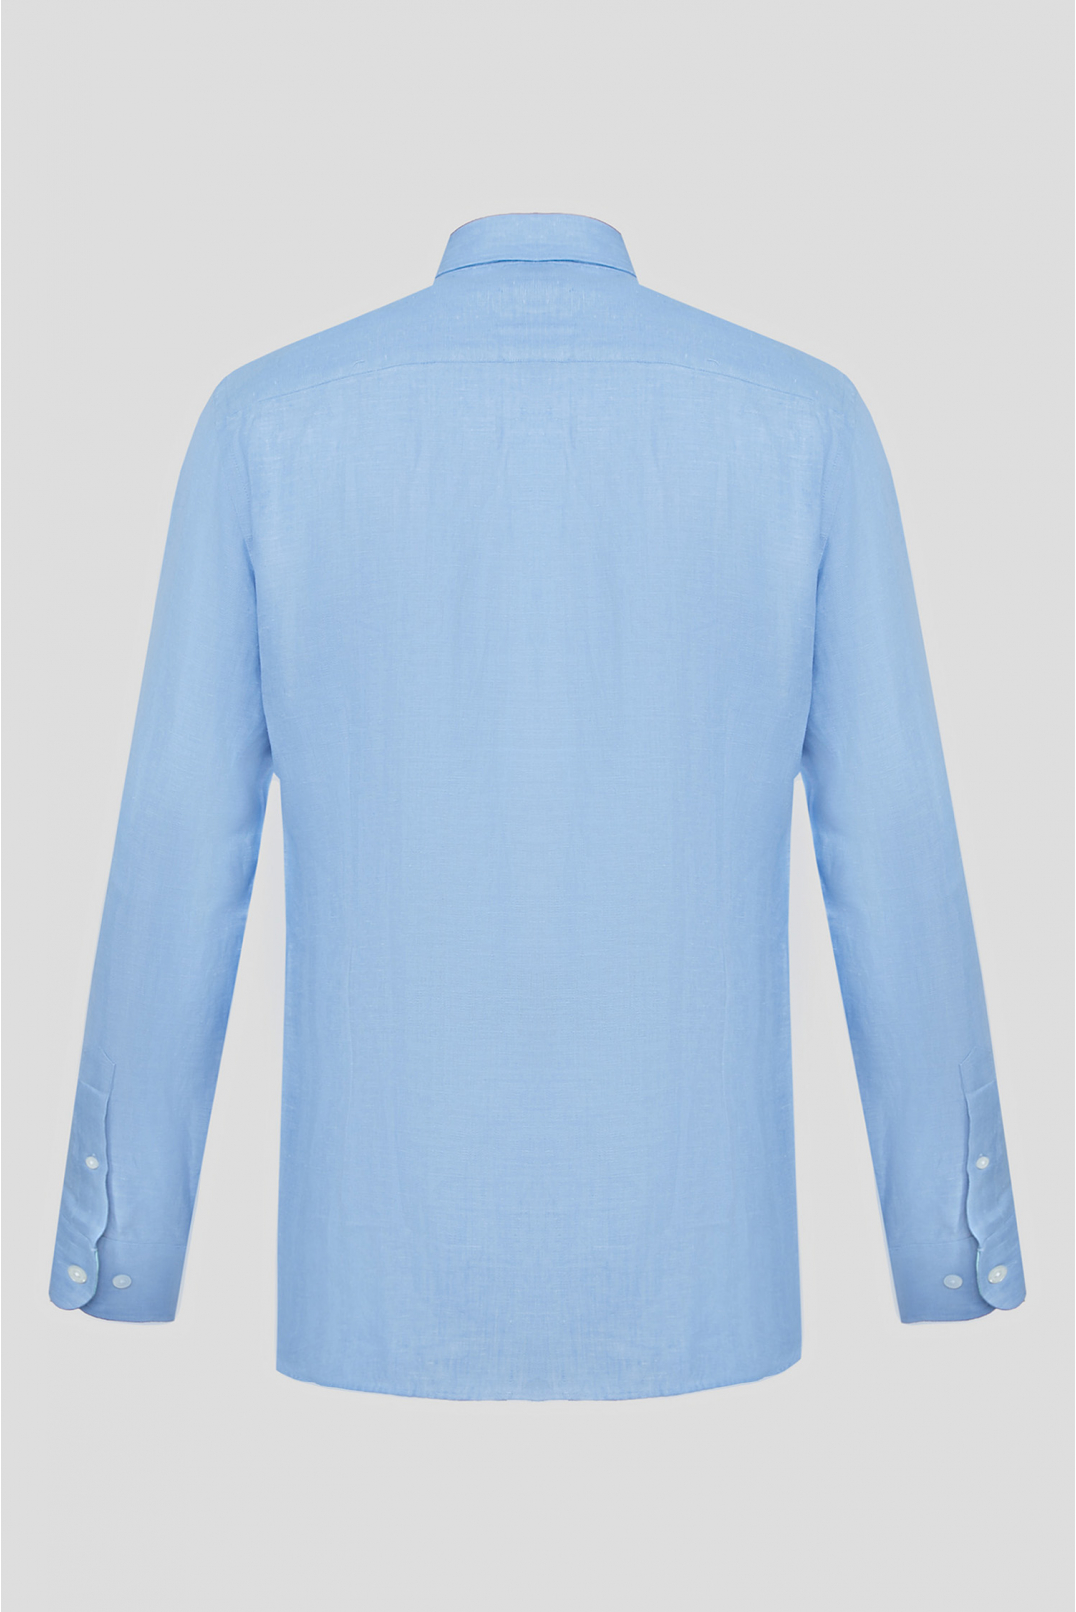 Мужская голубая льняная рубашка - 2